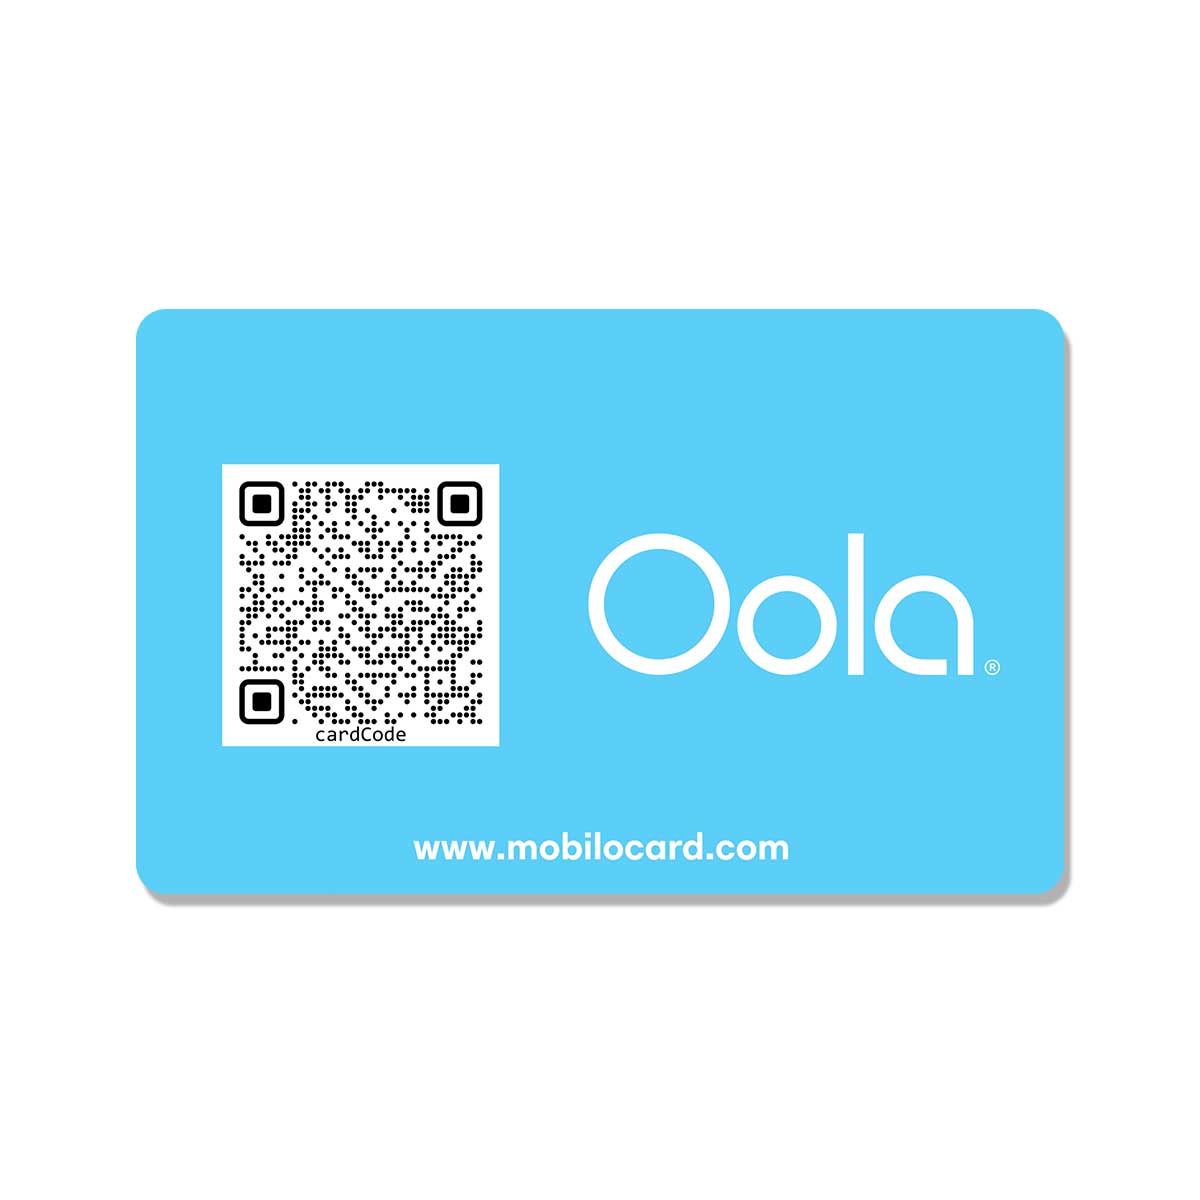 Oola Digital Business Card